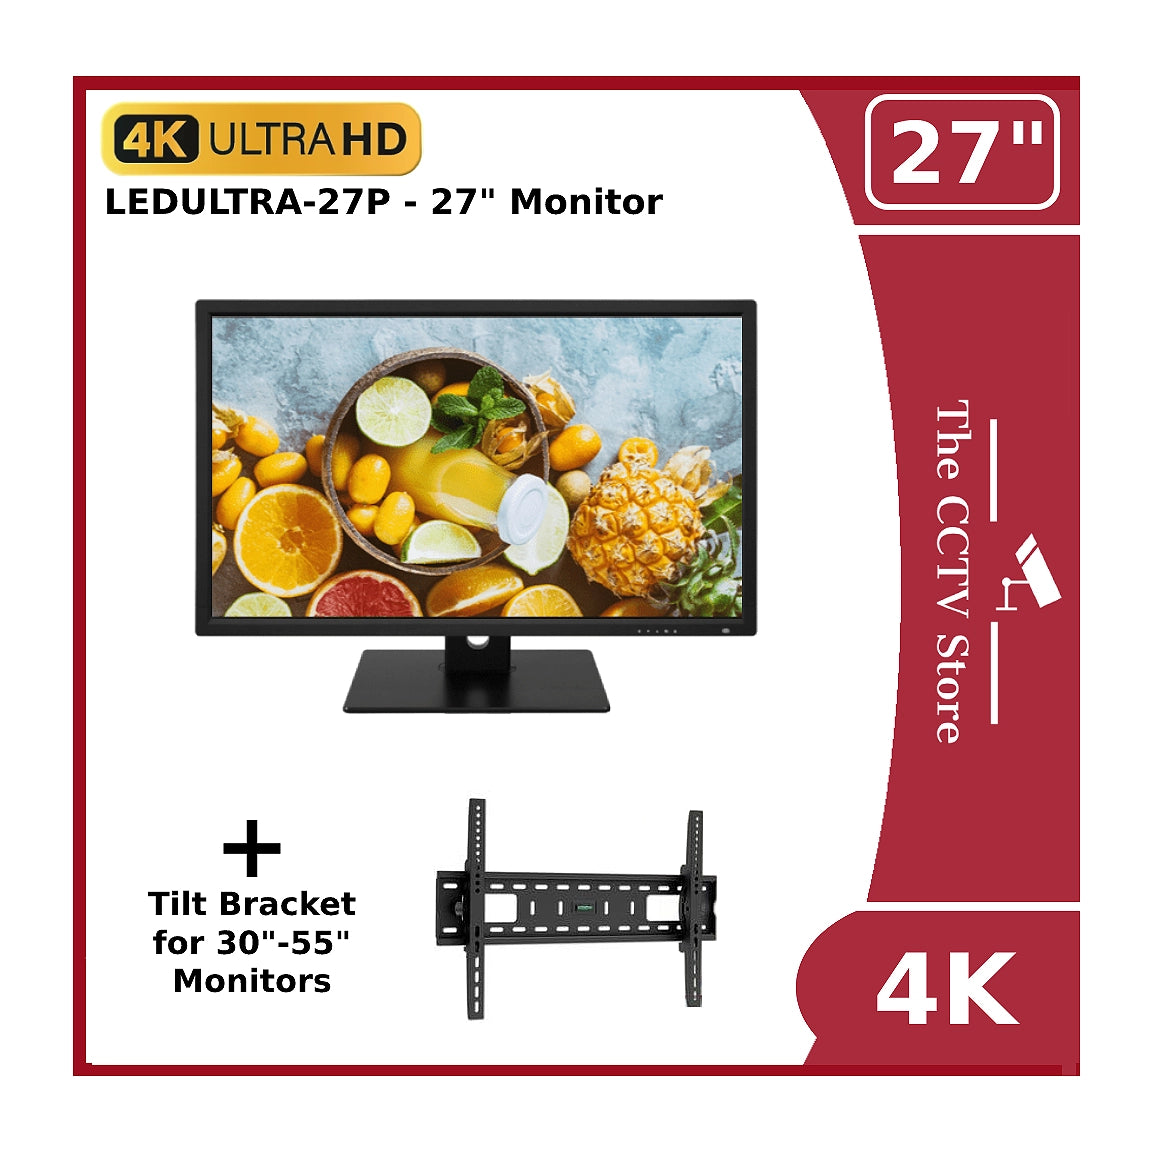 27" 4K ULTRA HD Monitor - CCTV Large Display LED Monitor 16:9 & 2 HDMI Ports